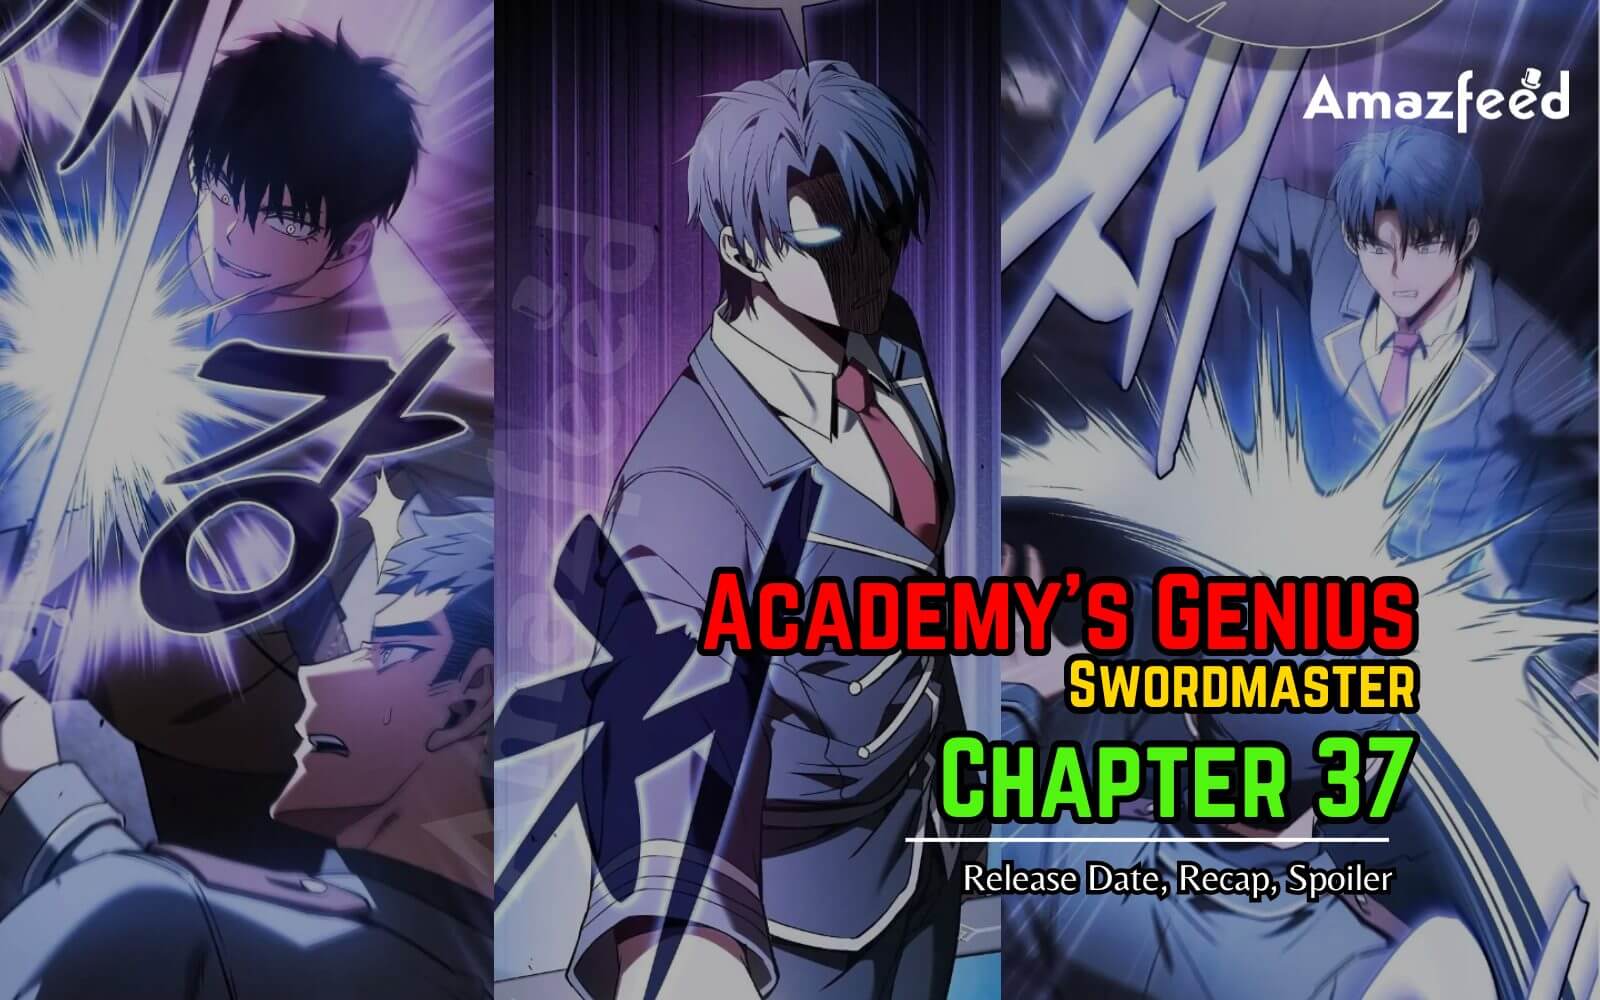 Academy’s Genius Swordmaster Chapter 37 Release Date